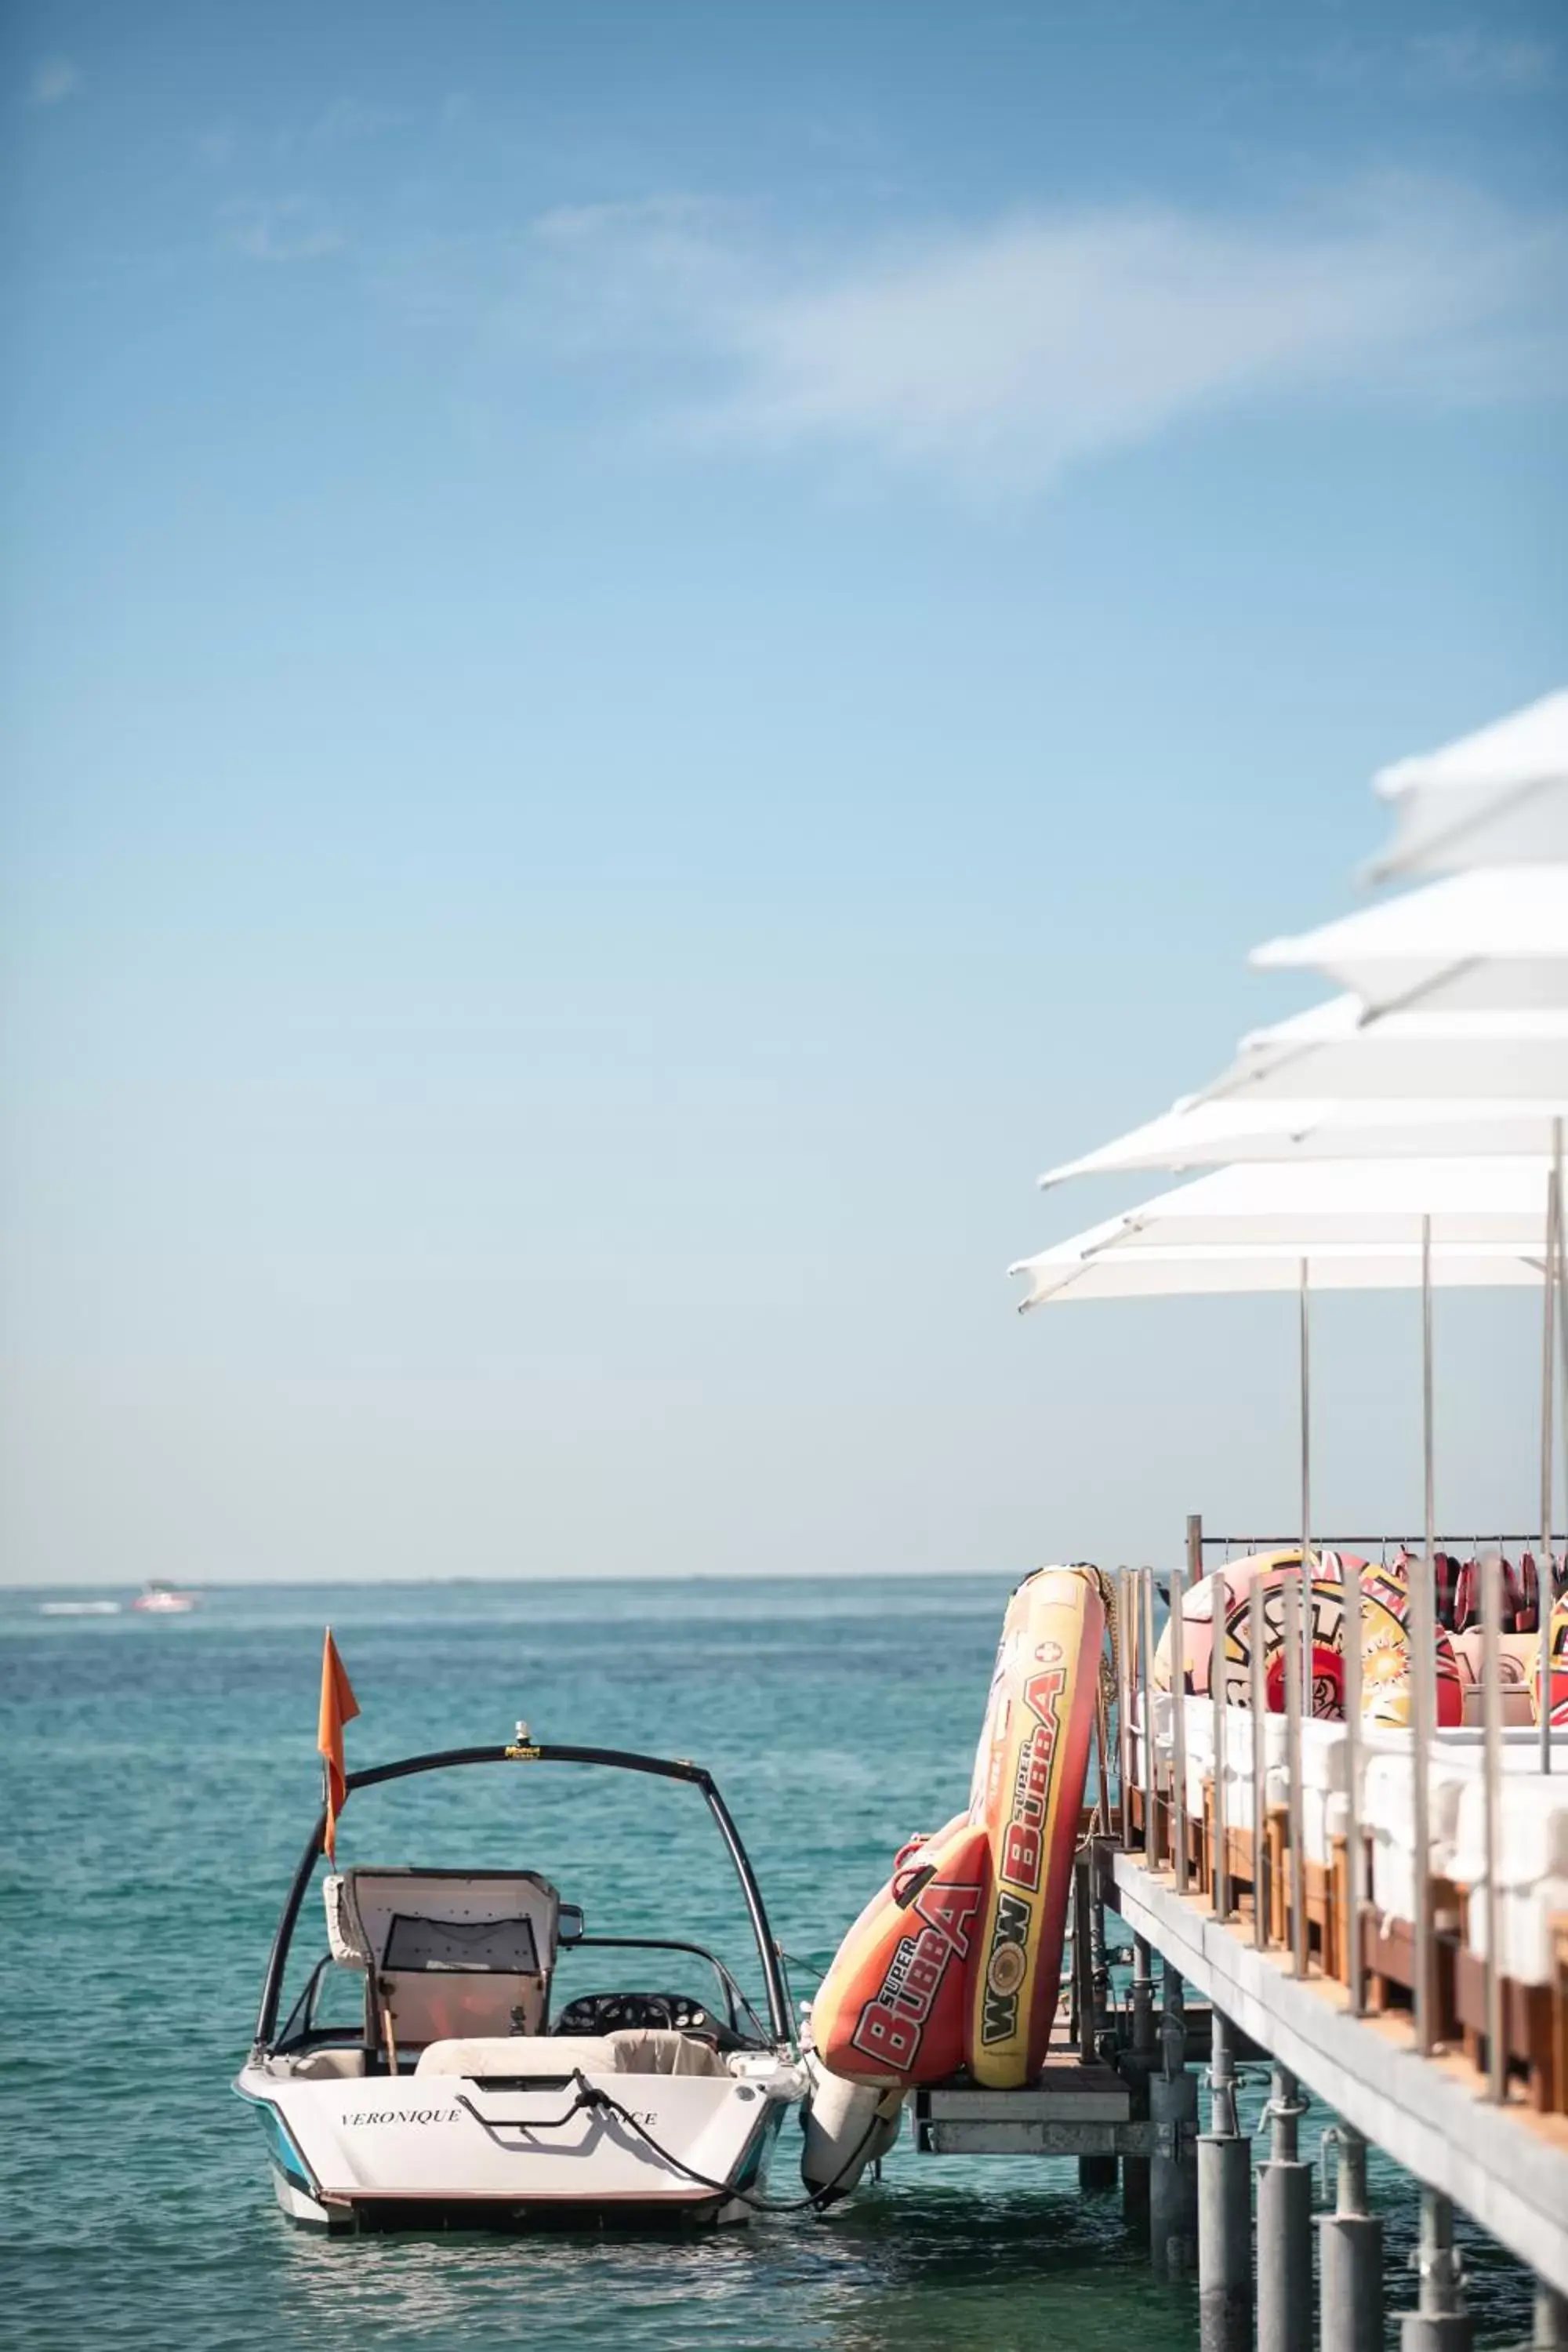 Beach in Mondrian Cannes